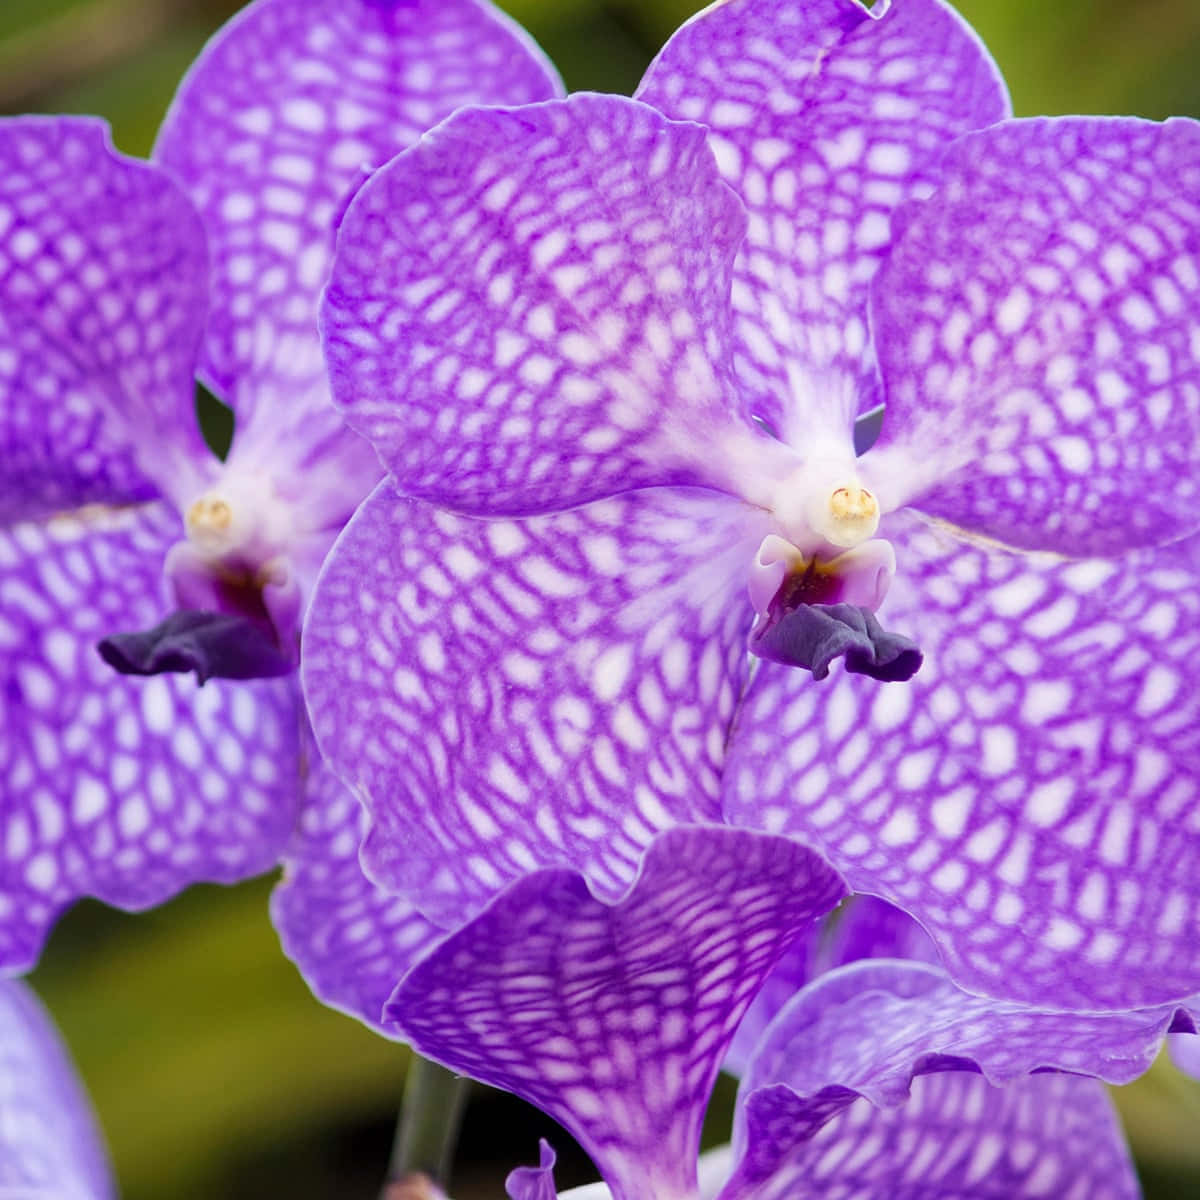 Elegant Orchid Close-up Wallpaper